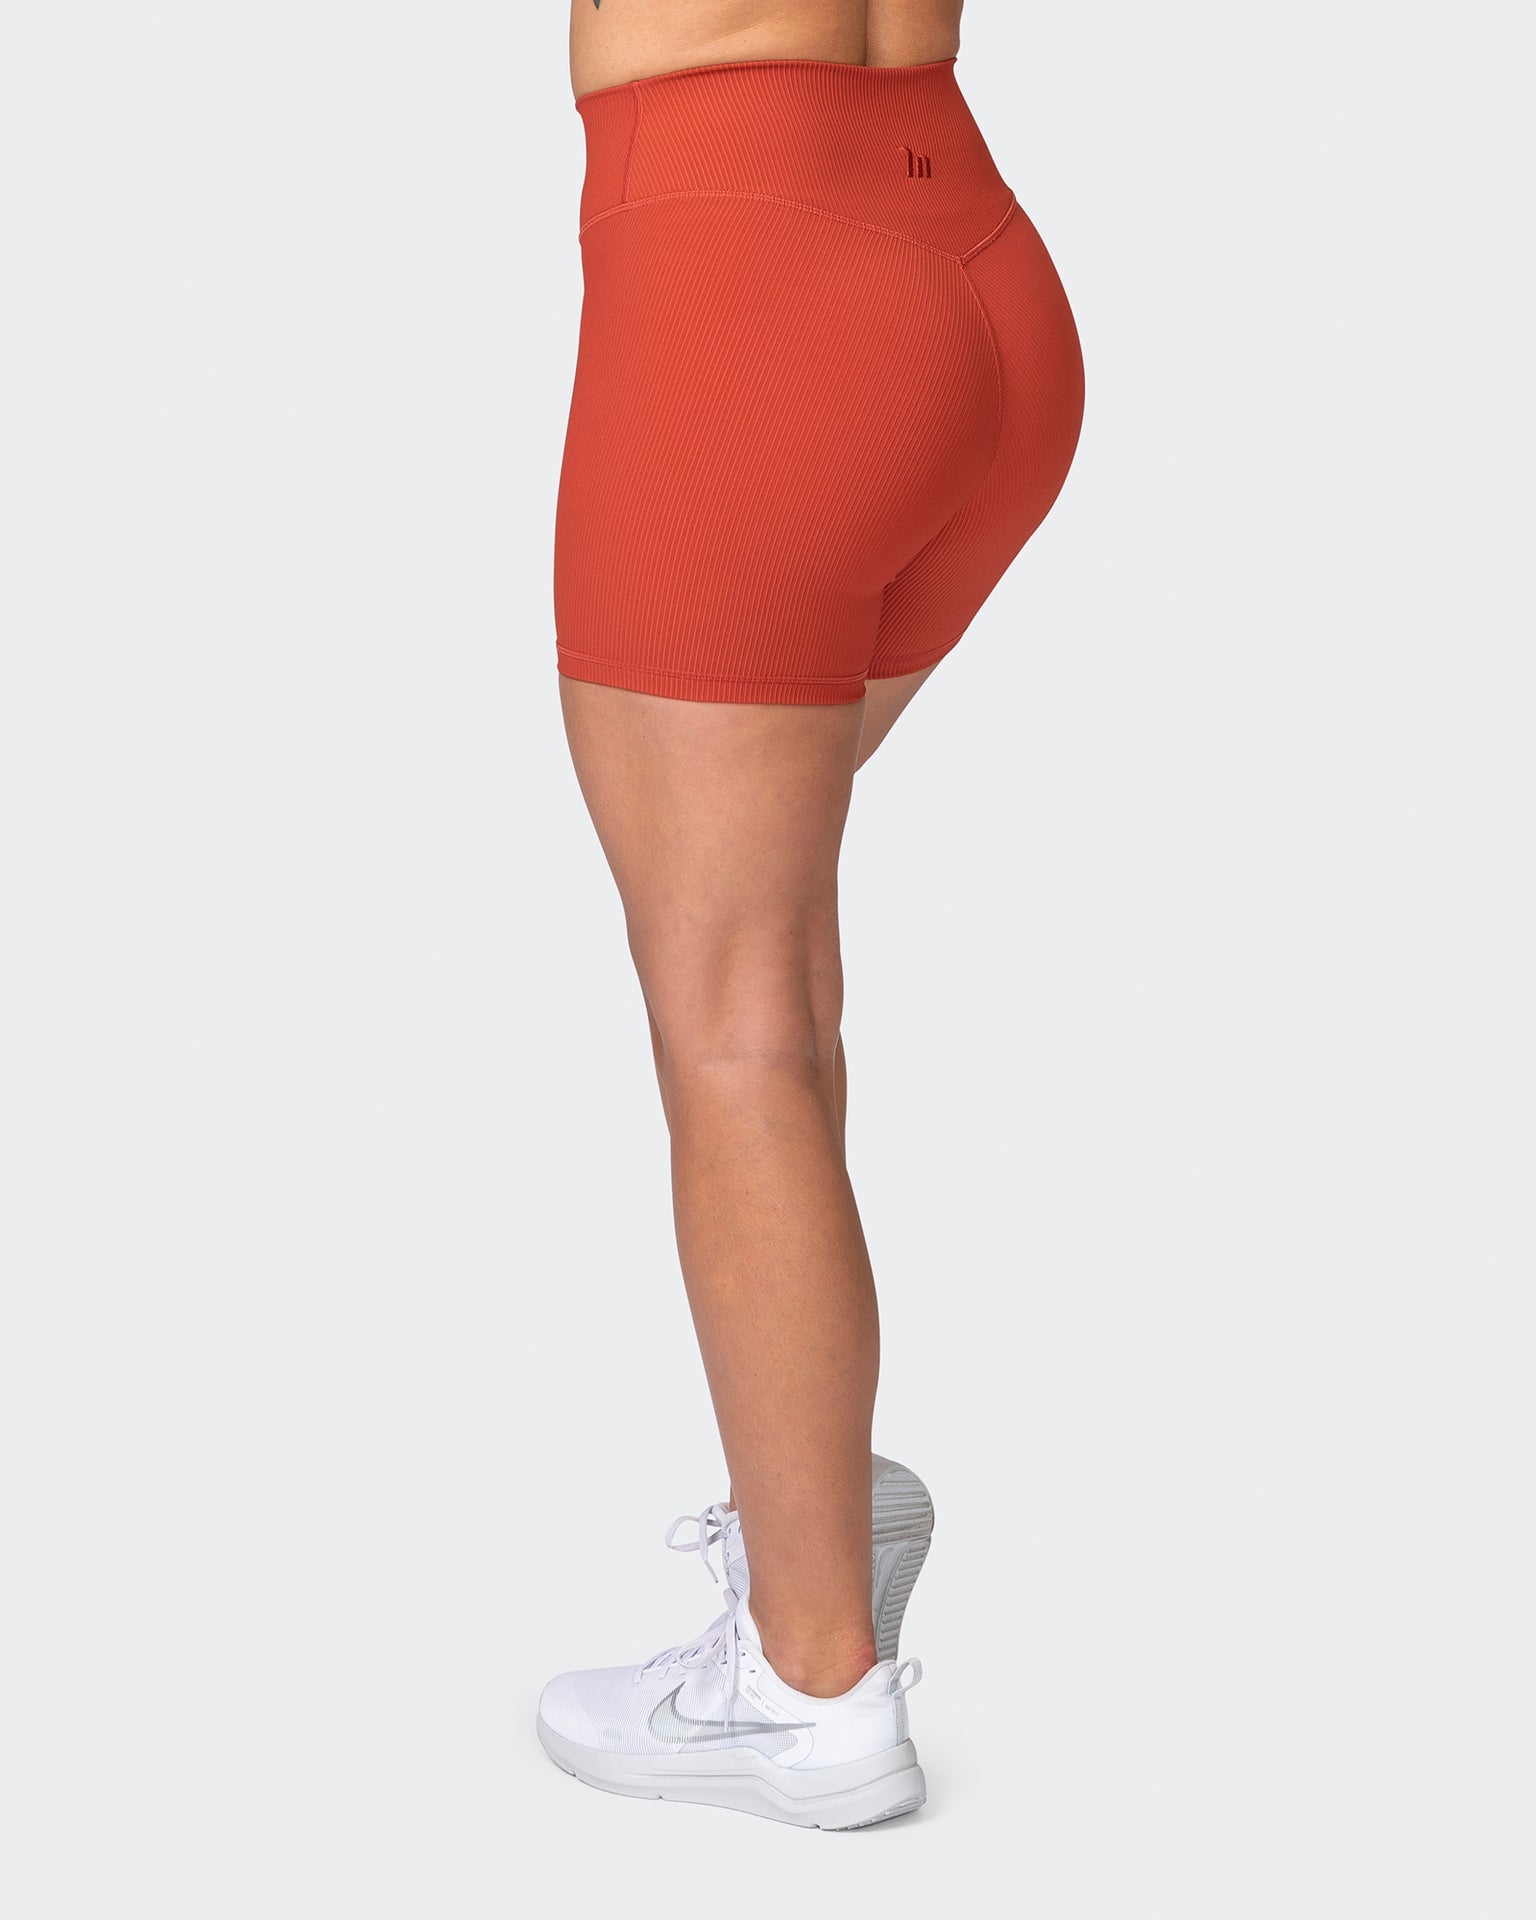 musclenation Gym Shorts Zero Rise Rib Midway Shorts - Burnt Orange